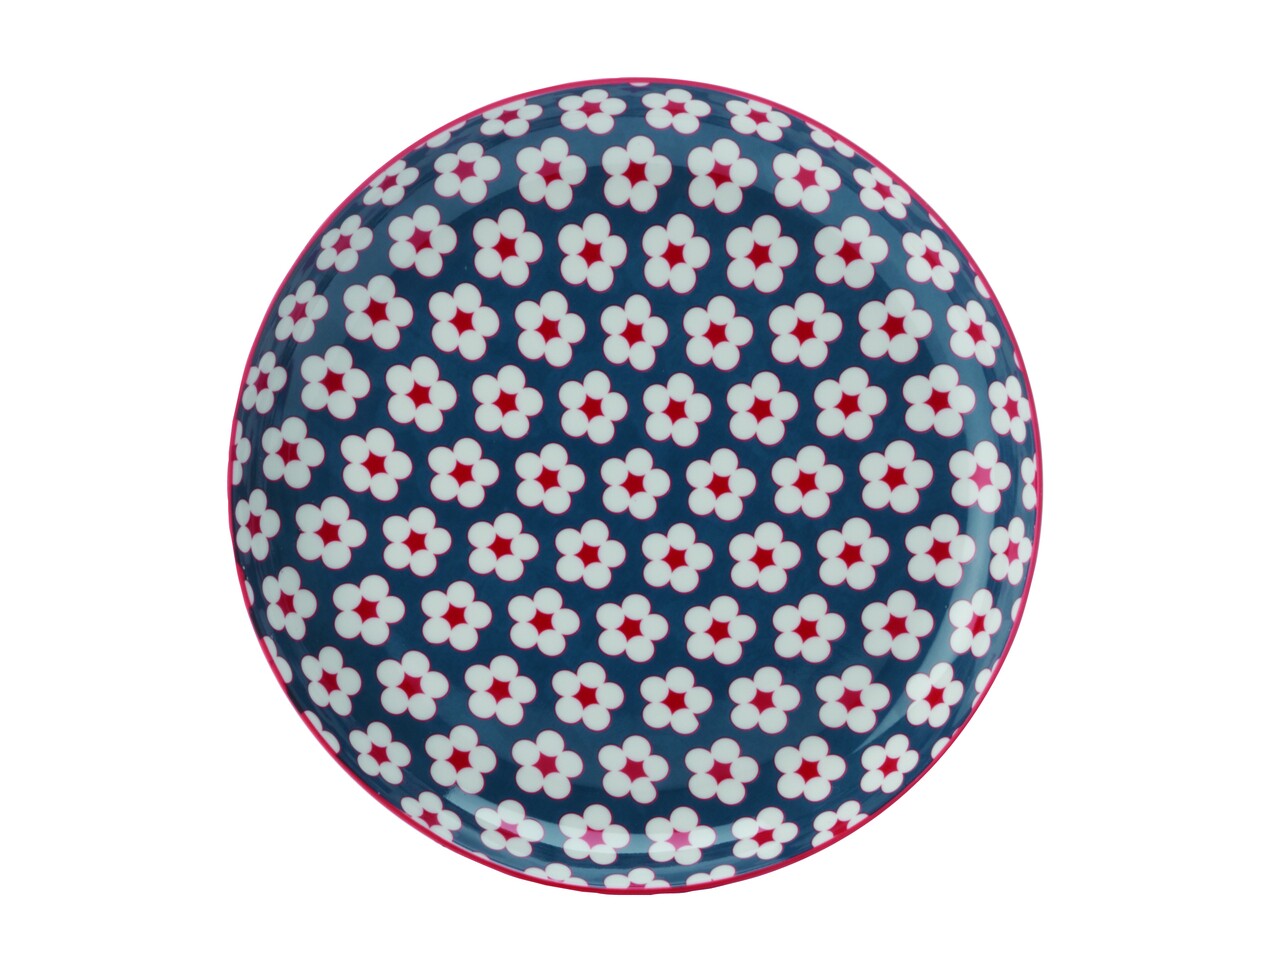 Stretch tányér, Maxwell & Williams, Cotton Bud Modry, 23 cm Ø, porcelán, többszínű